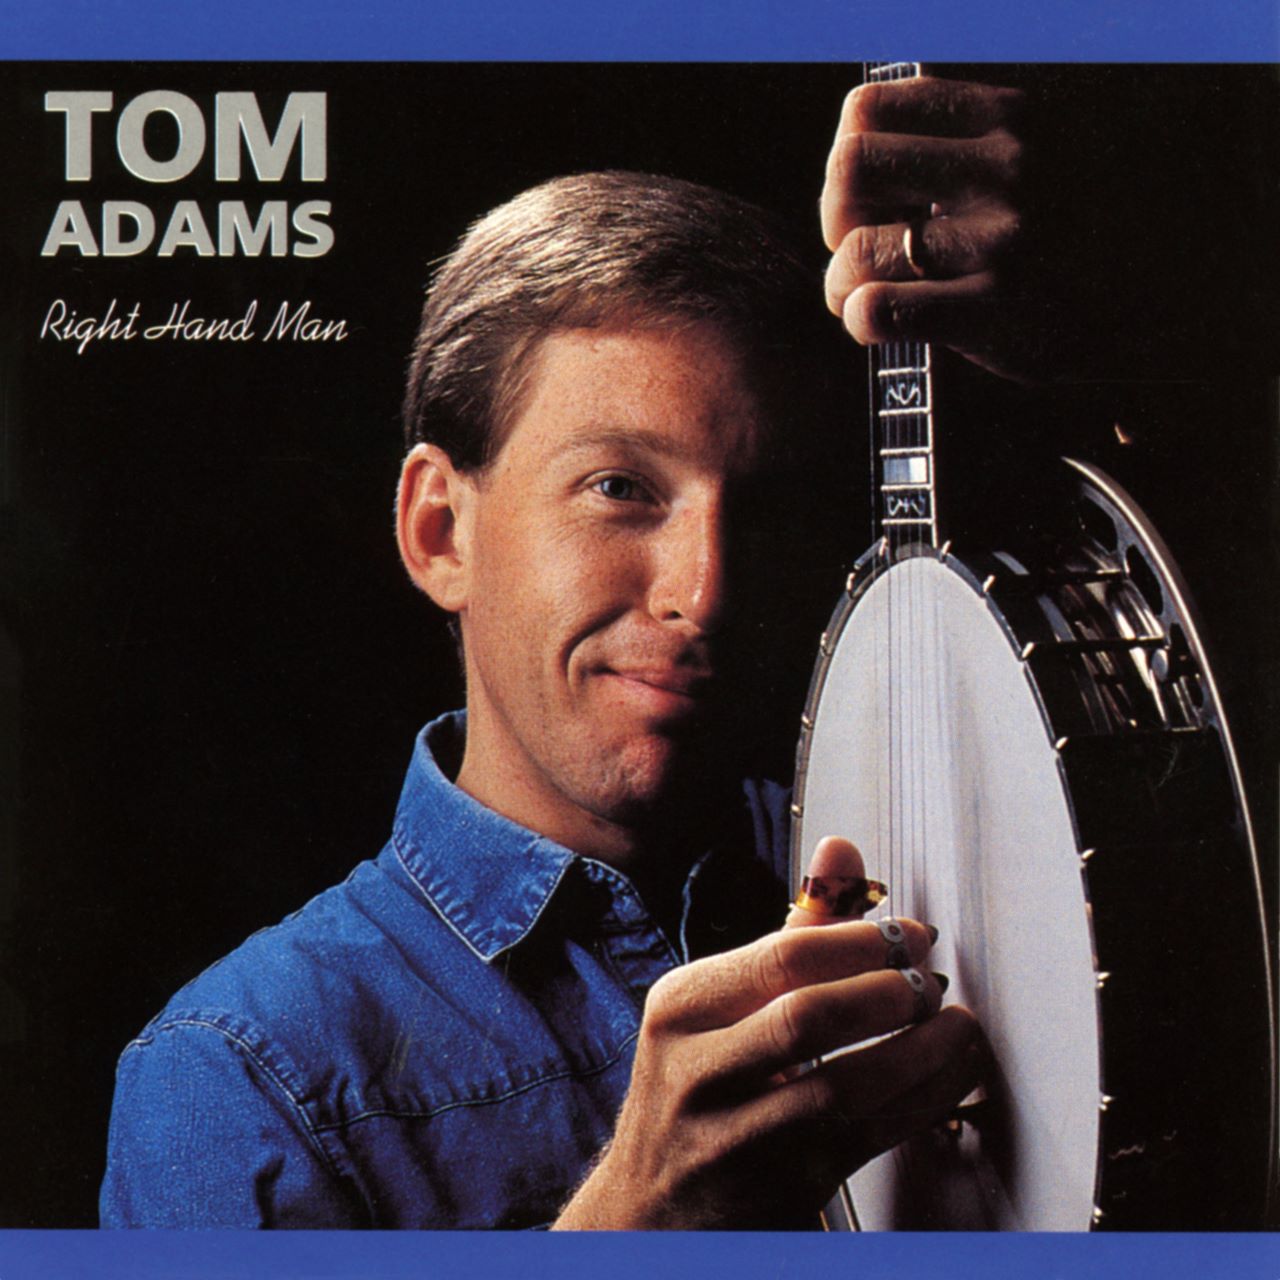 Tom Adams - Right Hand Man cover album